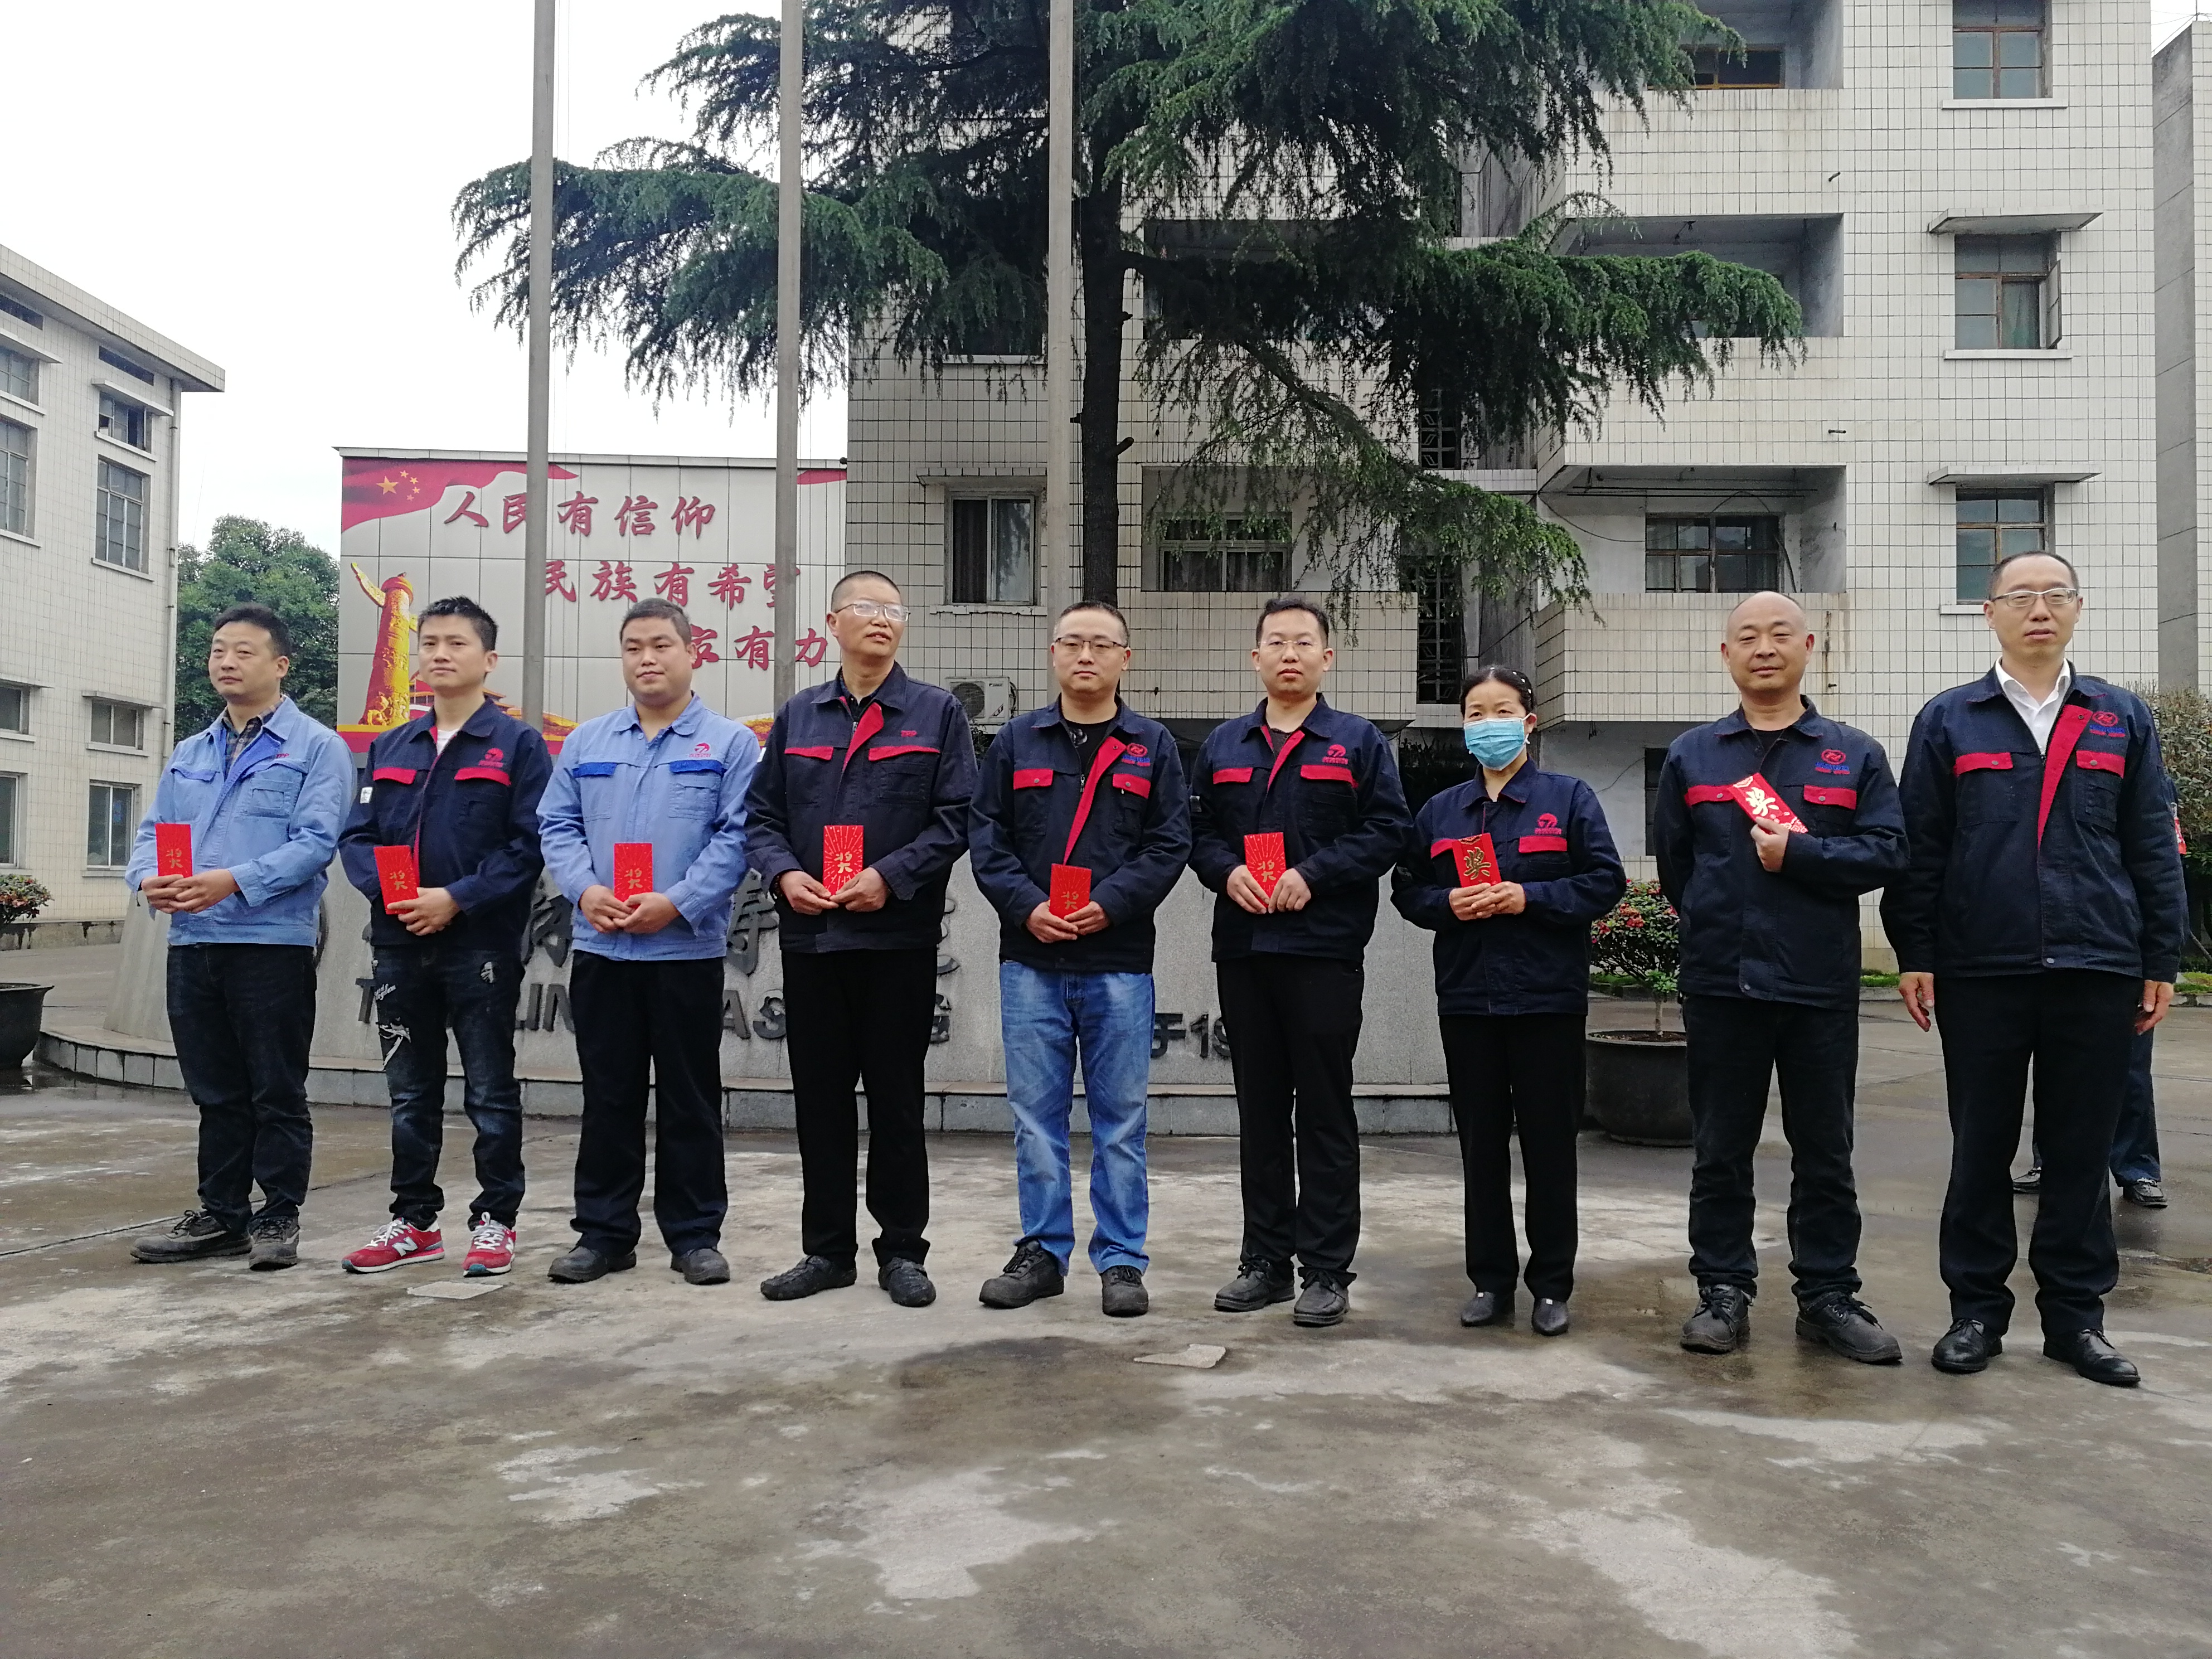 Nga mihi ki a Zhengheng Power Casting Factory mo te whiwhi 22 patent i te tau 2020